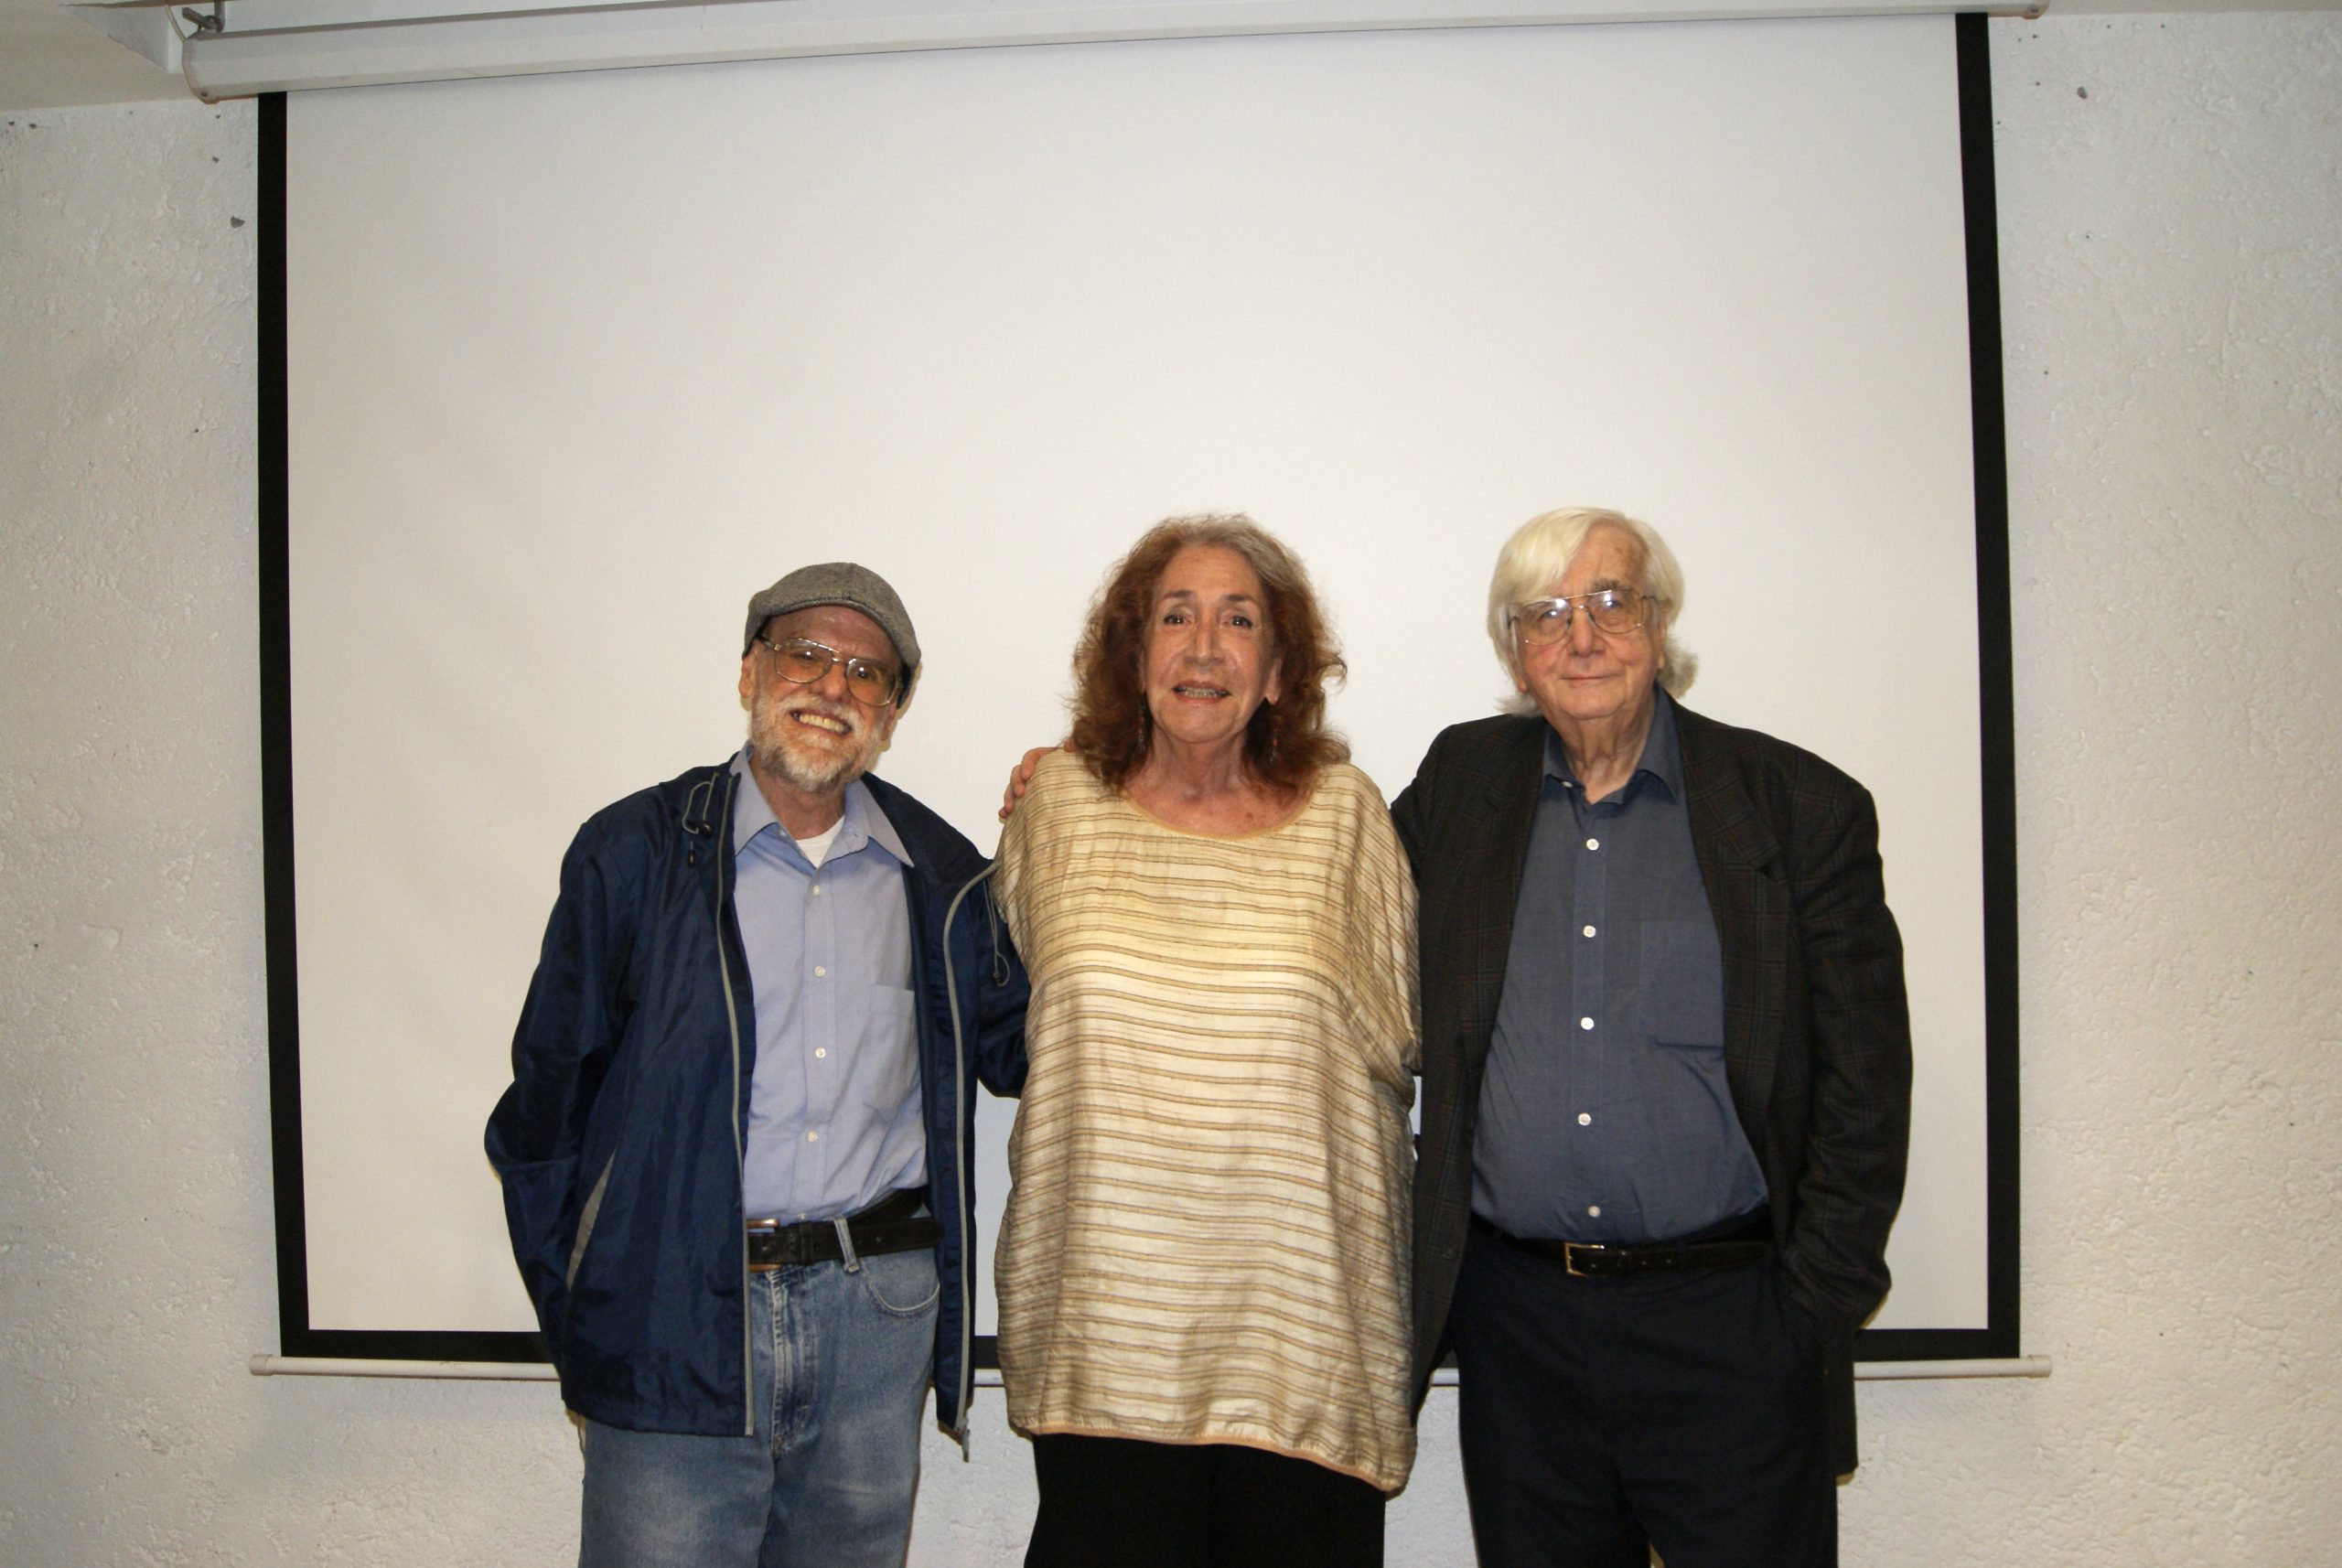 Jorge Alonso, Victoria Novelo y Eduardo Menéndez, en la entrega de reconocimientos como investigadores eméritos del CIESAS, Cuernavaca, Morelos 